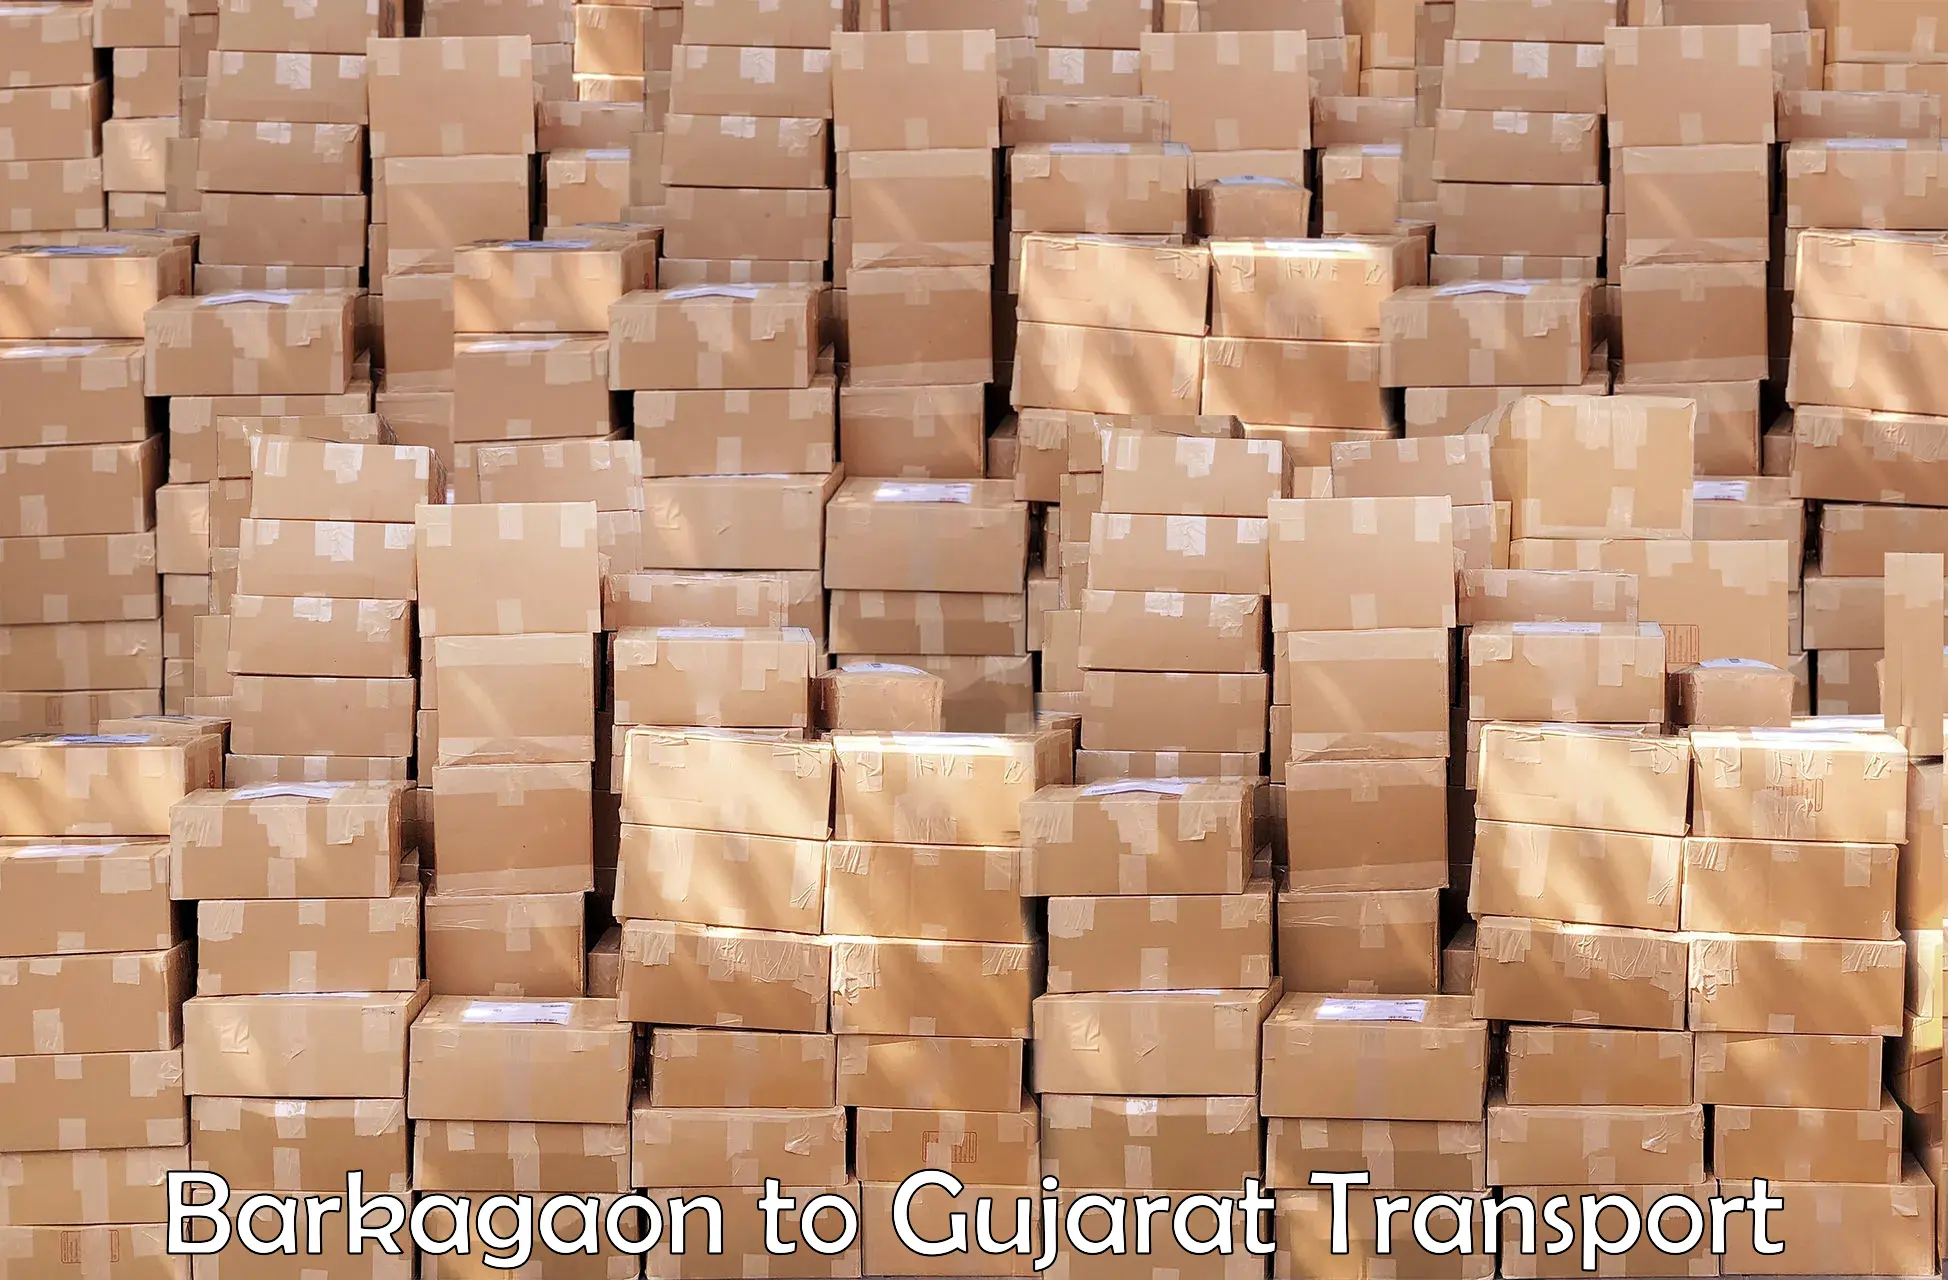 Delivery service Barkagaon to Vadodara